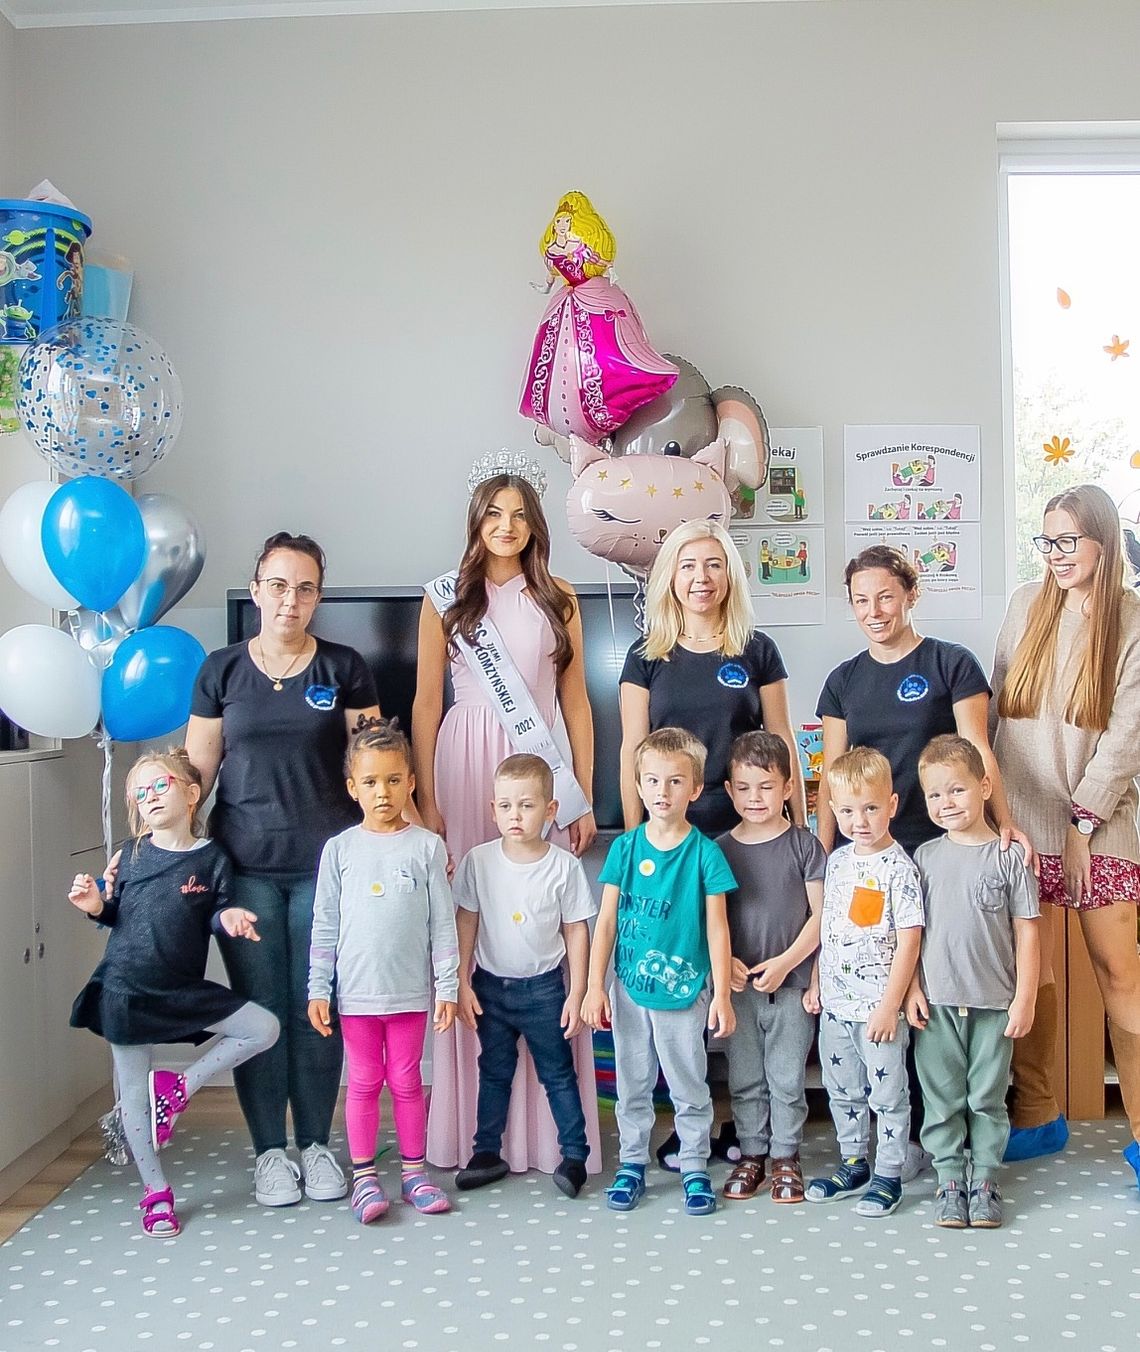 Miss Ziemi Łomżyńskiej 2021 uczy dzieci przyjaźni [FOTO] 